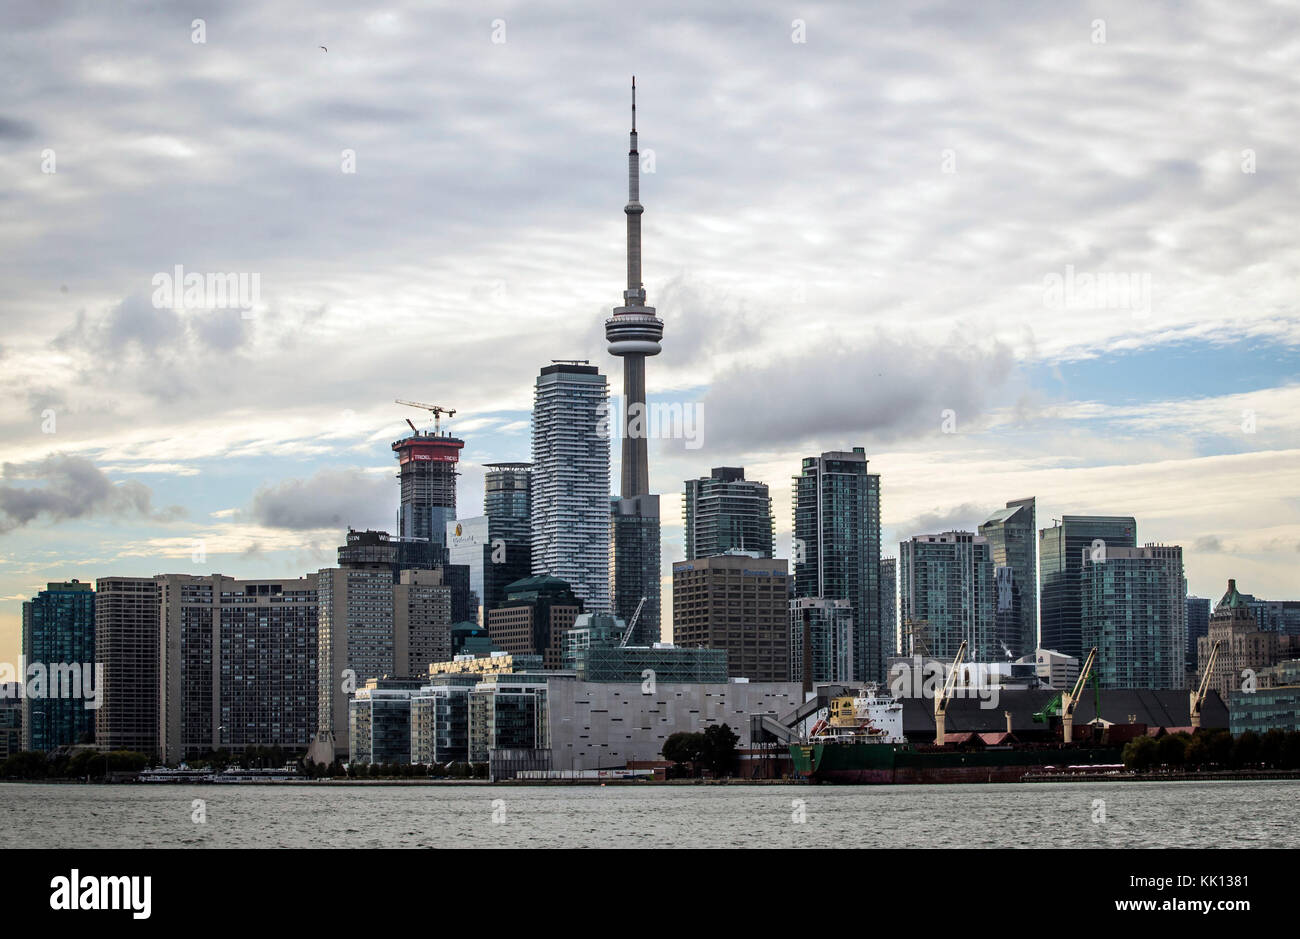 Eine allgemeine Sicht auf die Skyline von Toronto in Kanada, einschließlich dem CN Tower. Prinz Harry und Meghan Markle haben ihre Verlobung. Stockfoto